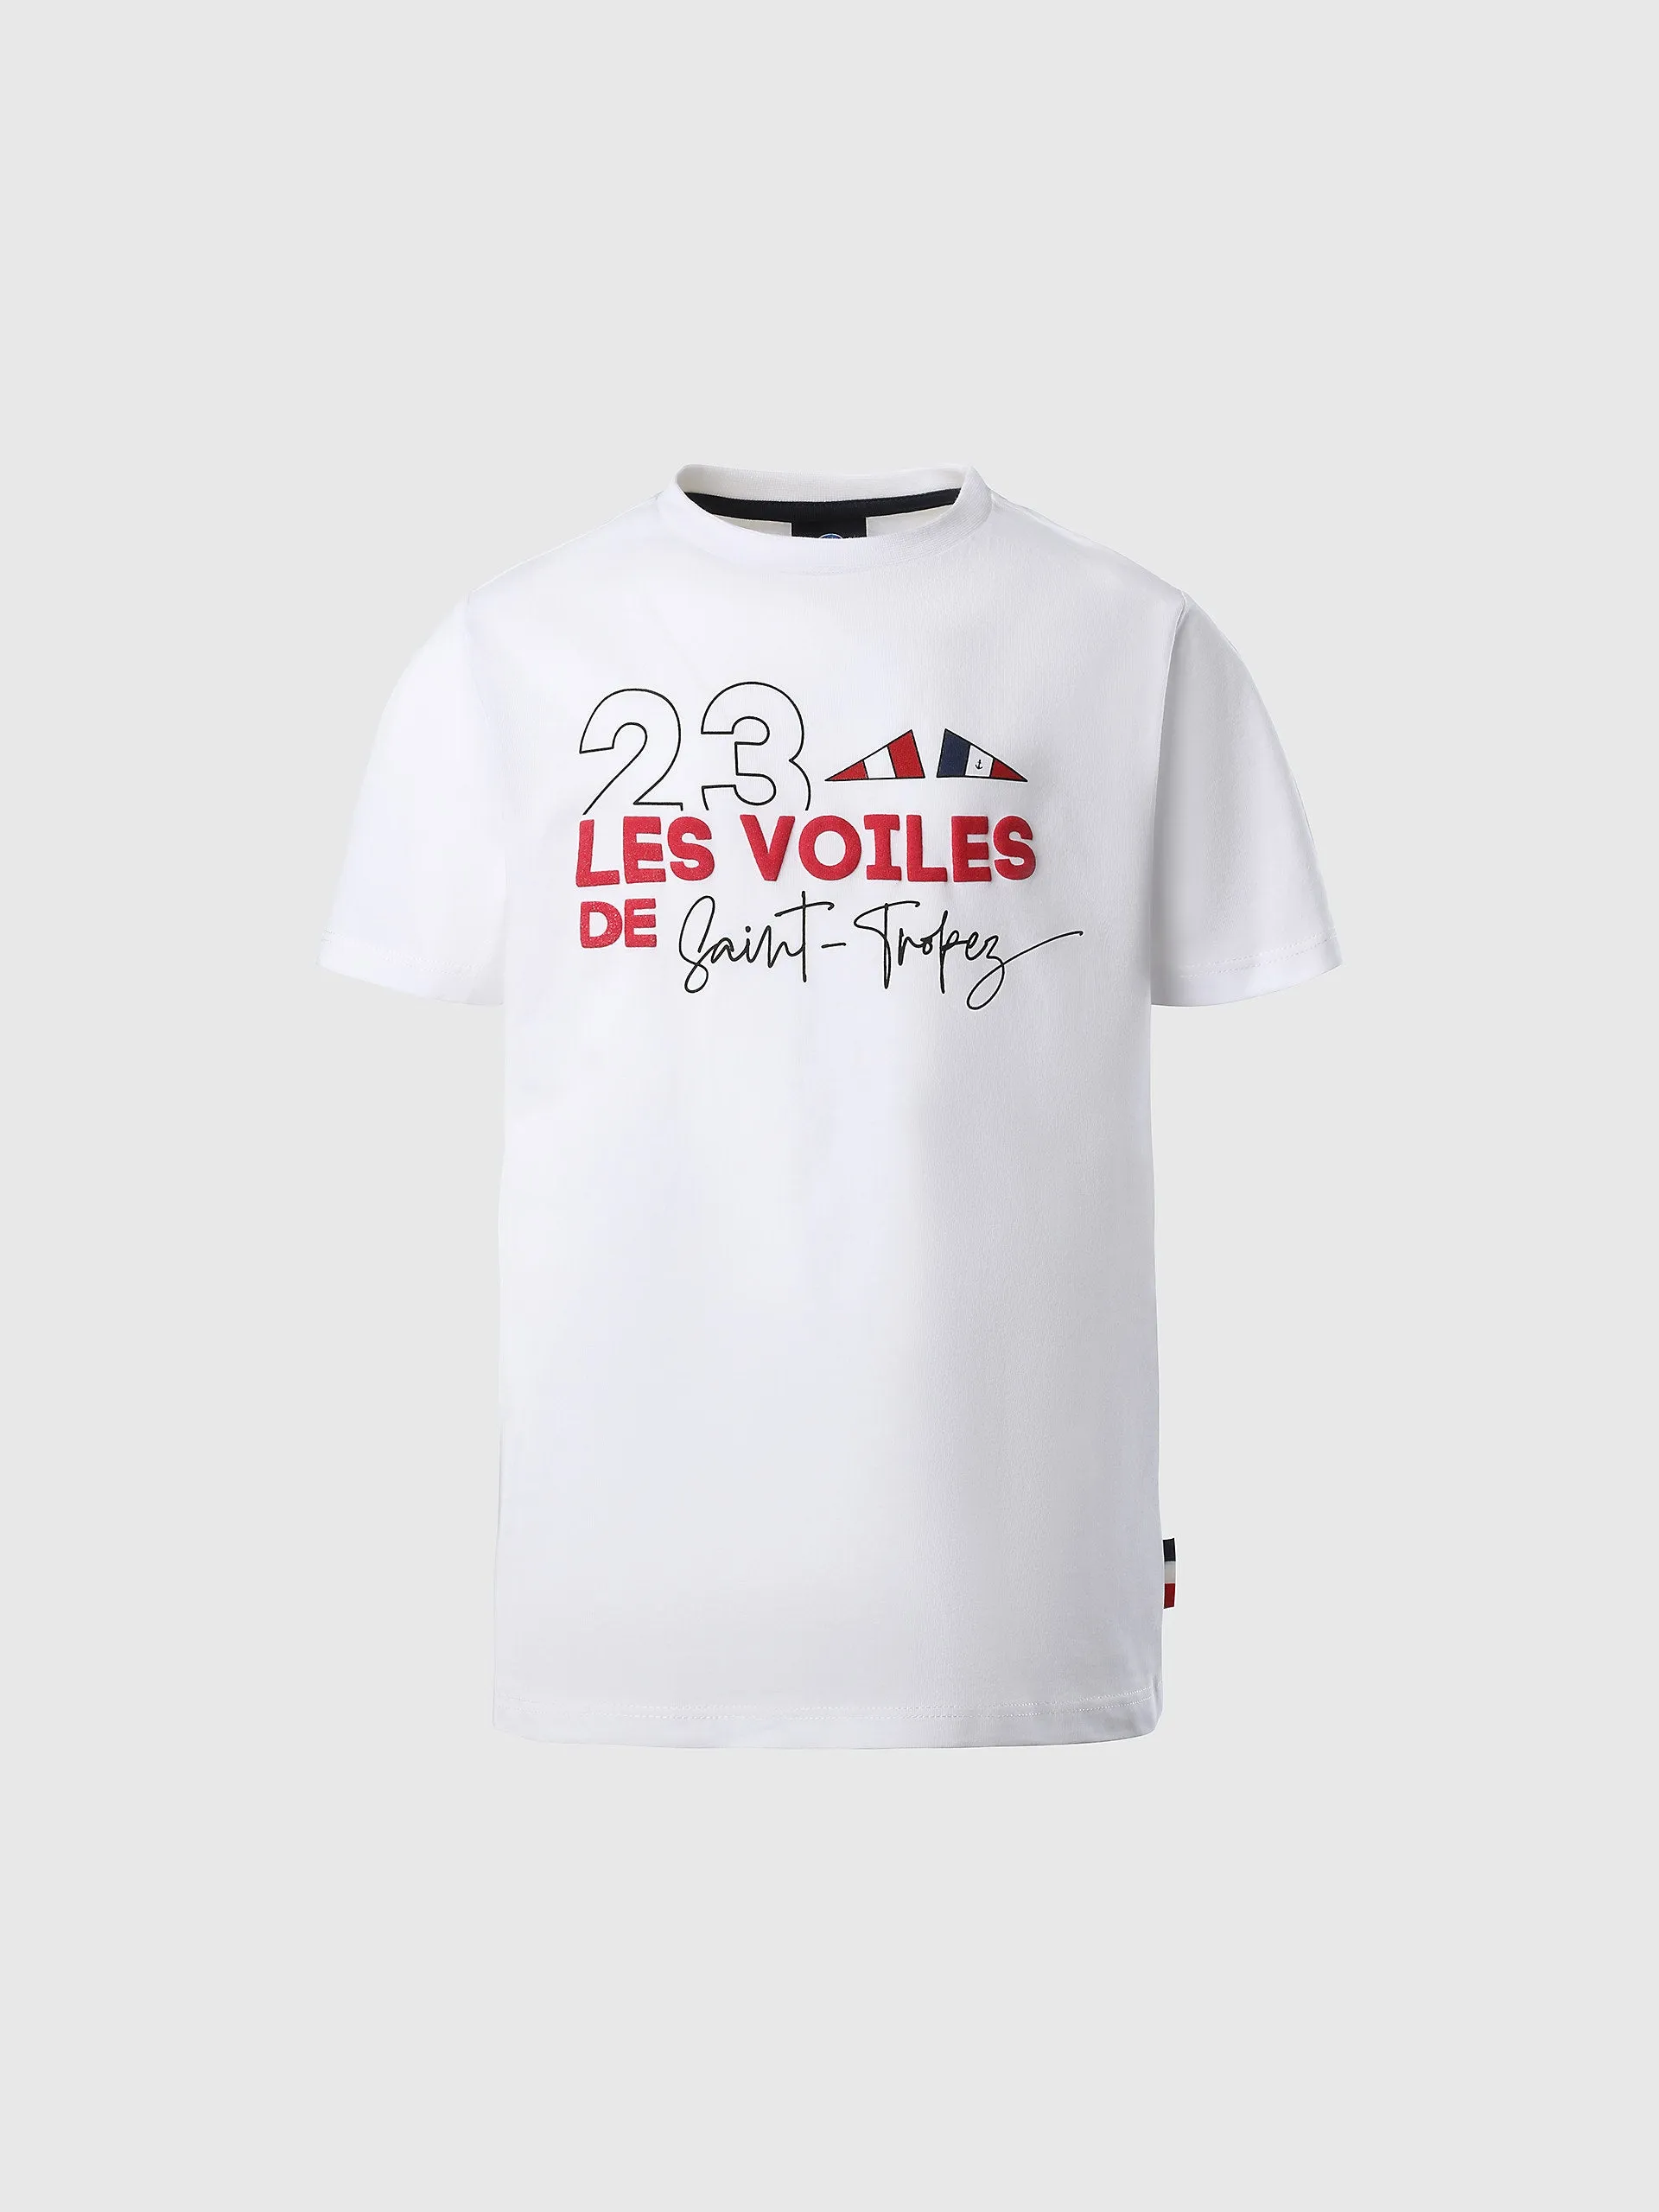  - Saint-Tropez T-shirtWhite12